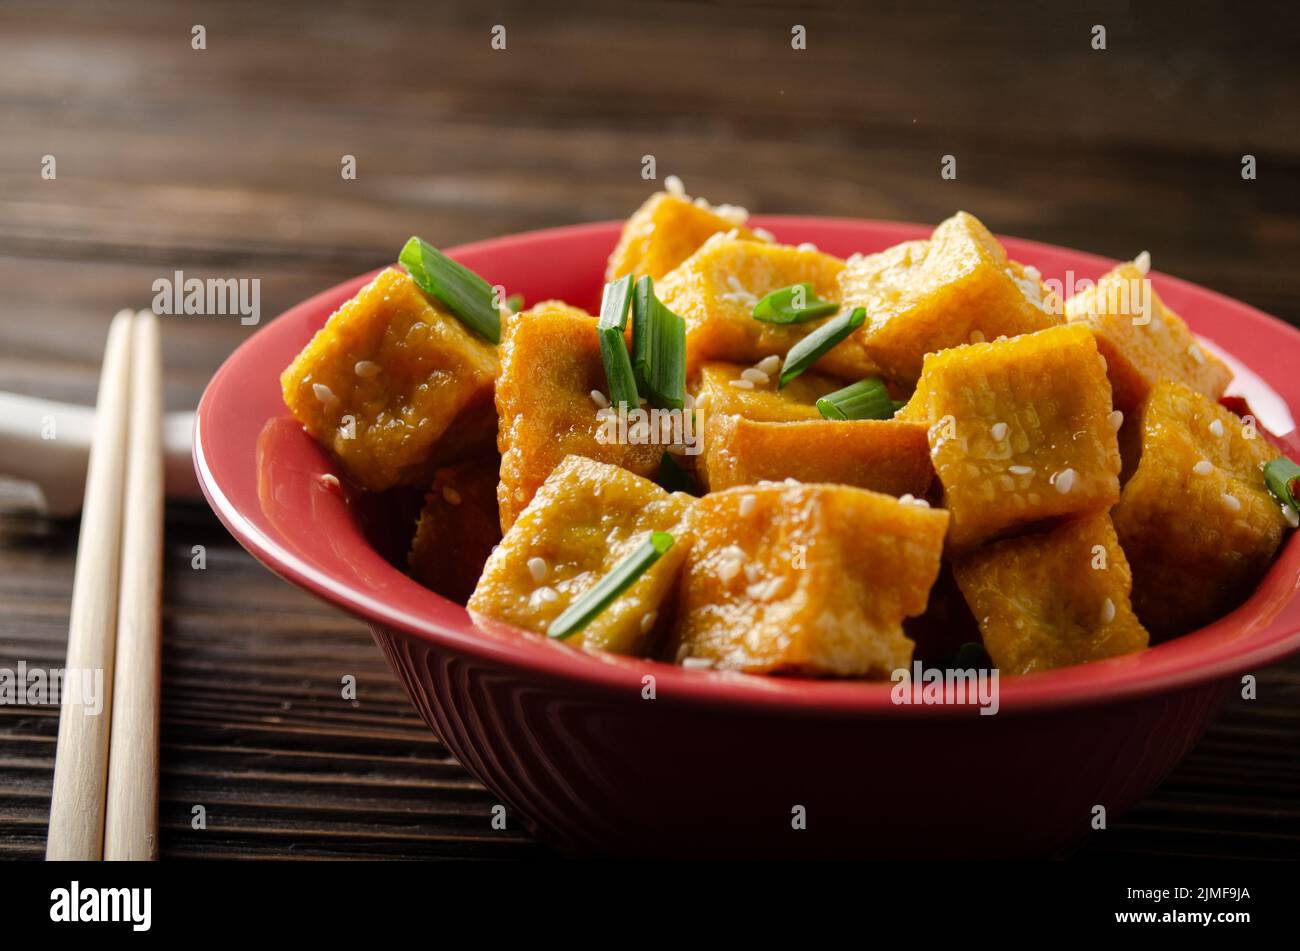 Croccanti e profondi, soffritti i cubetti di tofu fritti con erba cipollina su un tavolo da cucina in legno Foto Stock